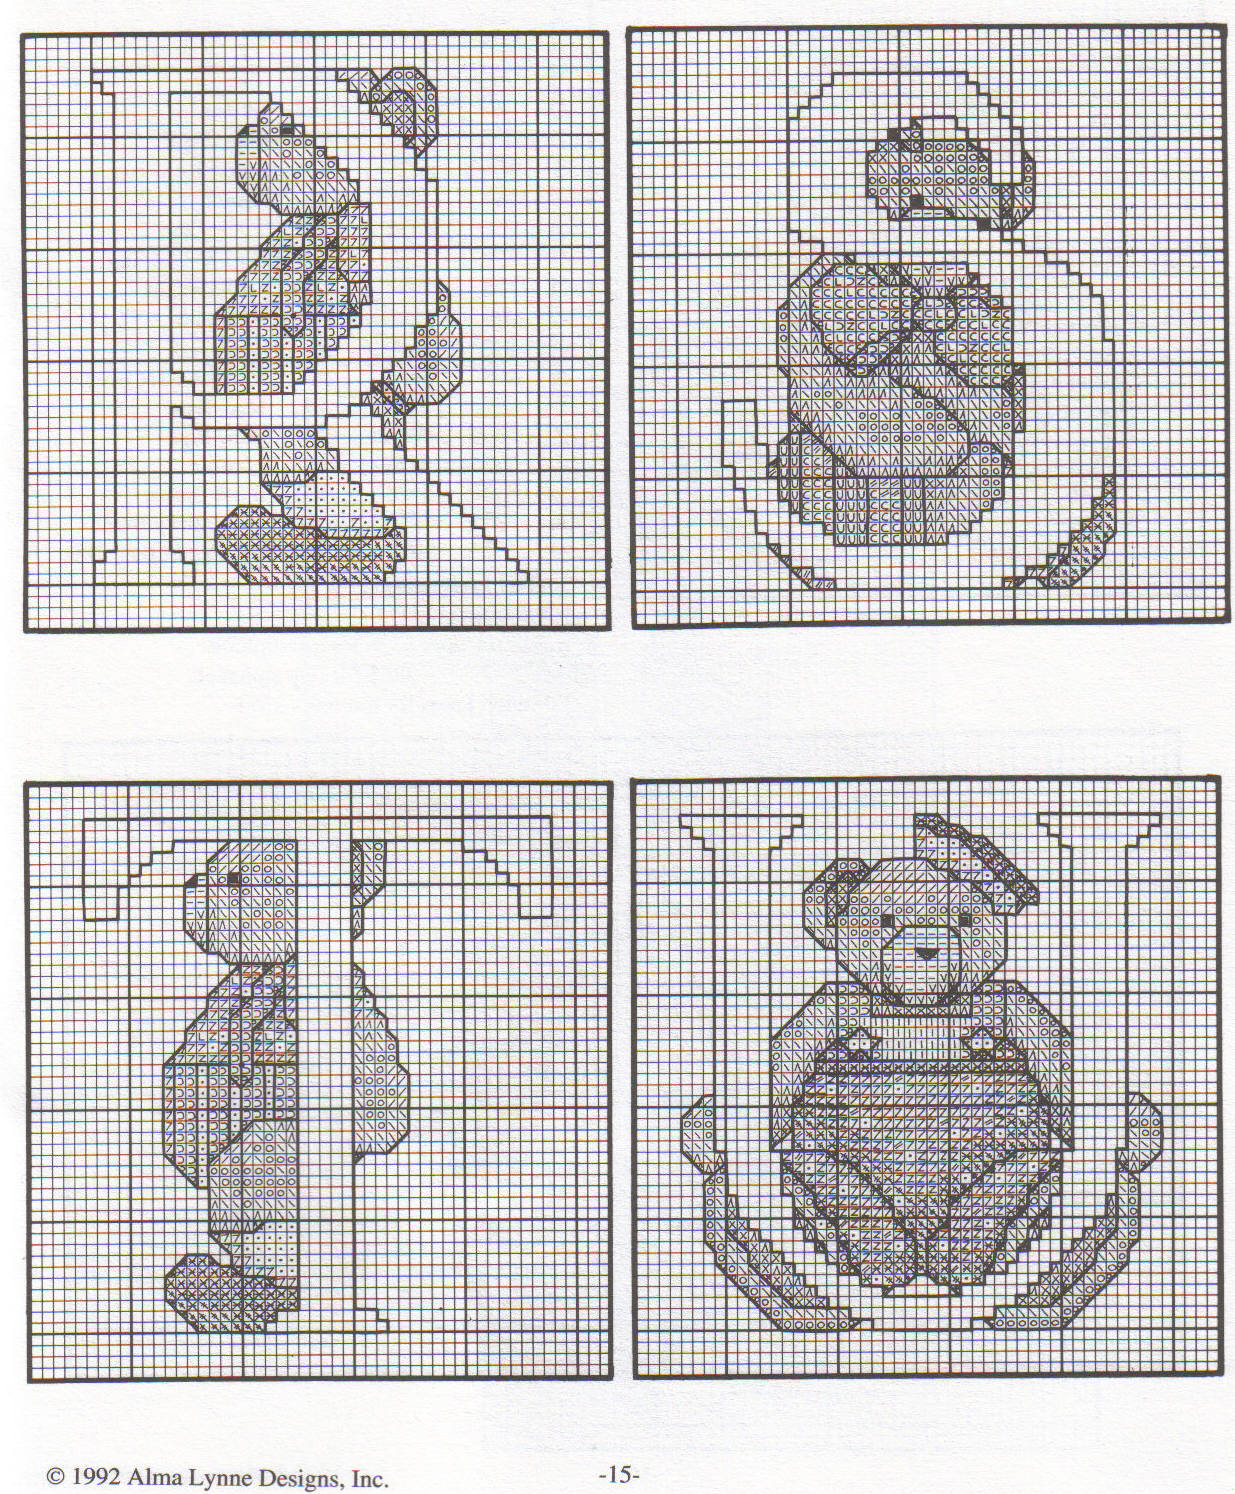 Cross stitch alphabet with sweet teddy bears (2)